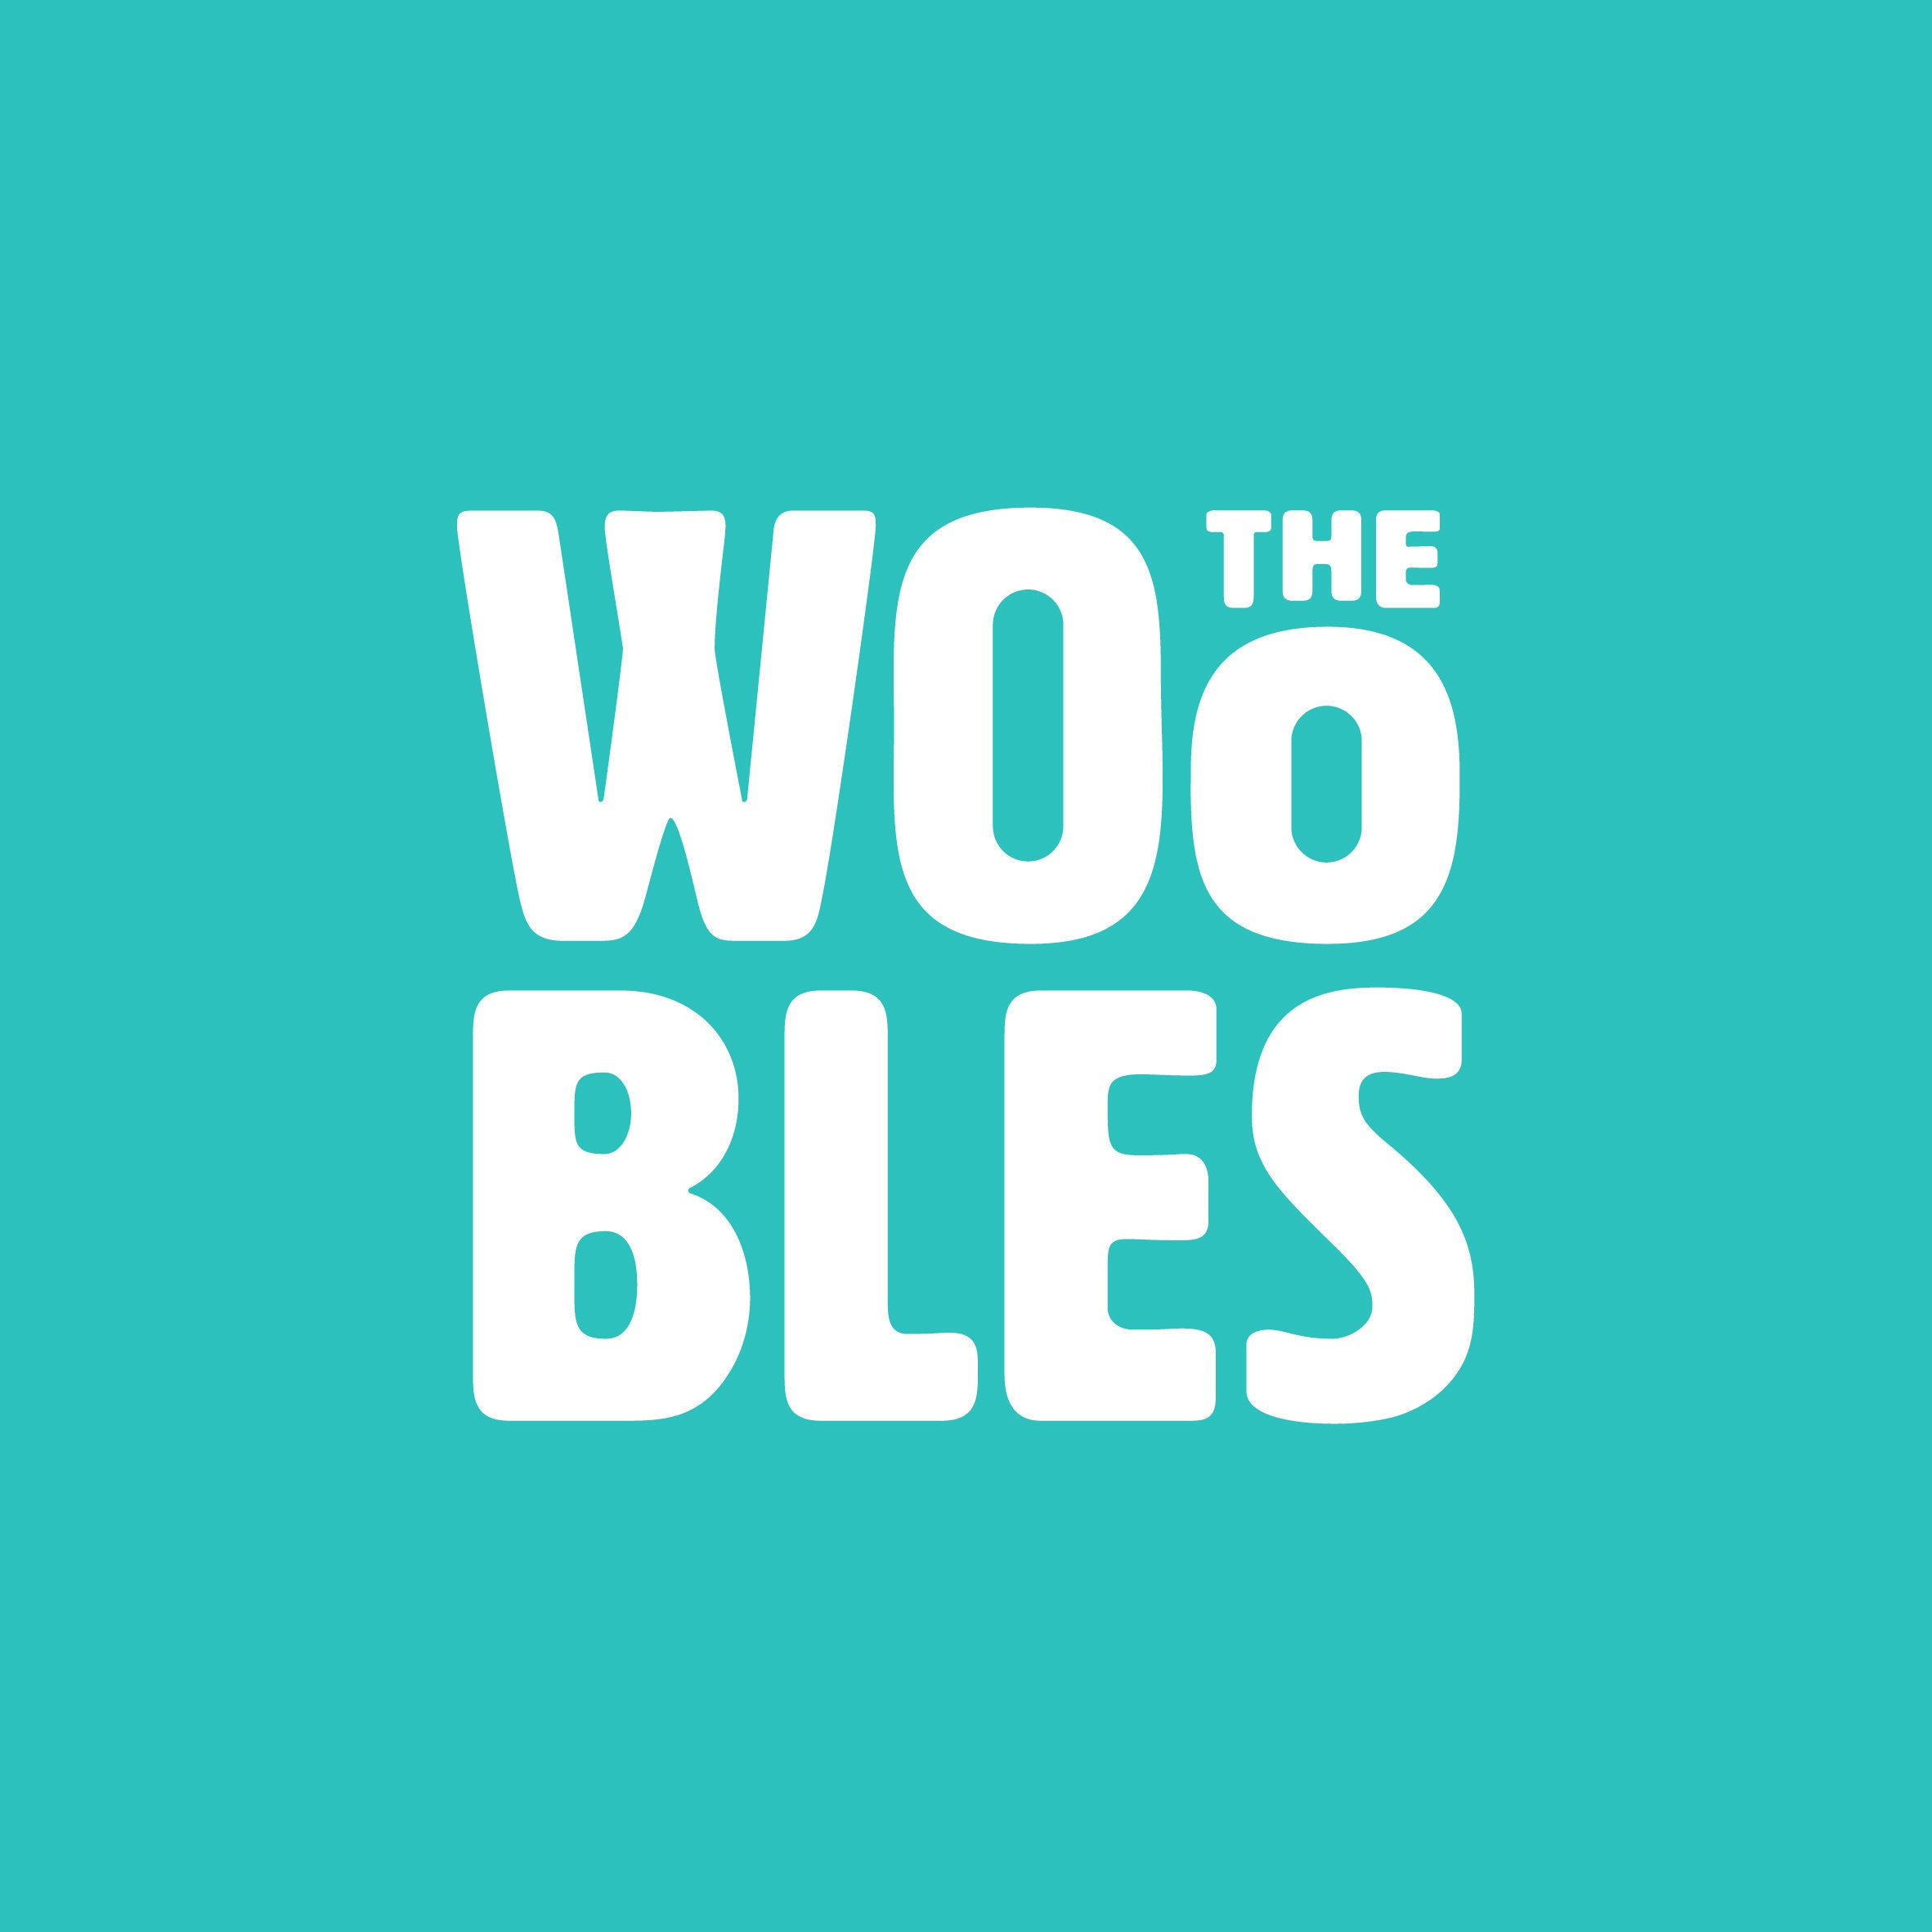 The Woobles - Pierre The Penguin Beginner Crochet Kit